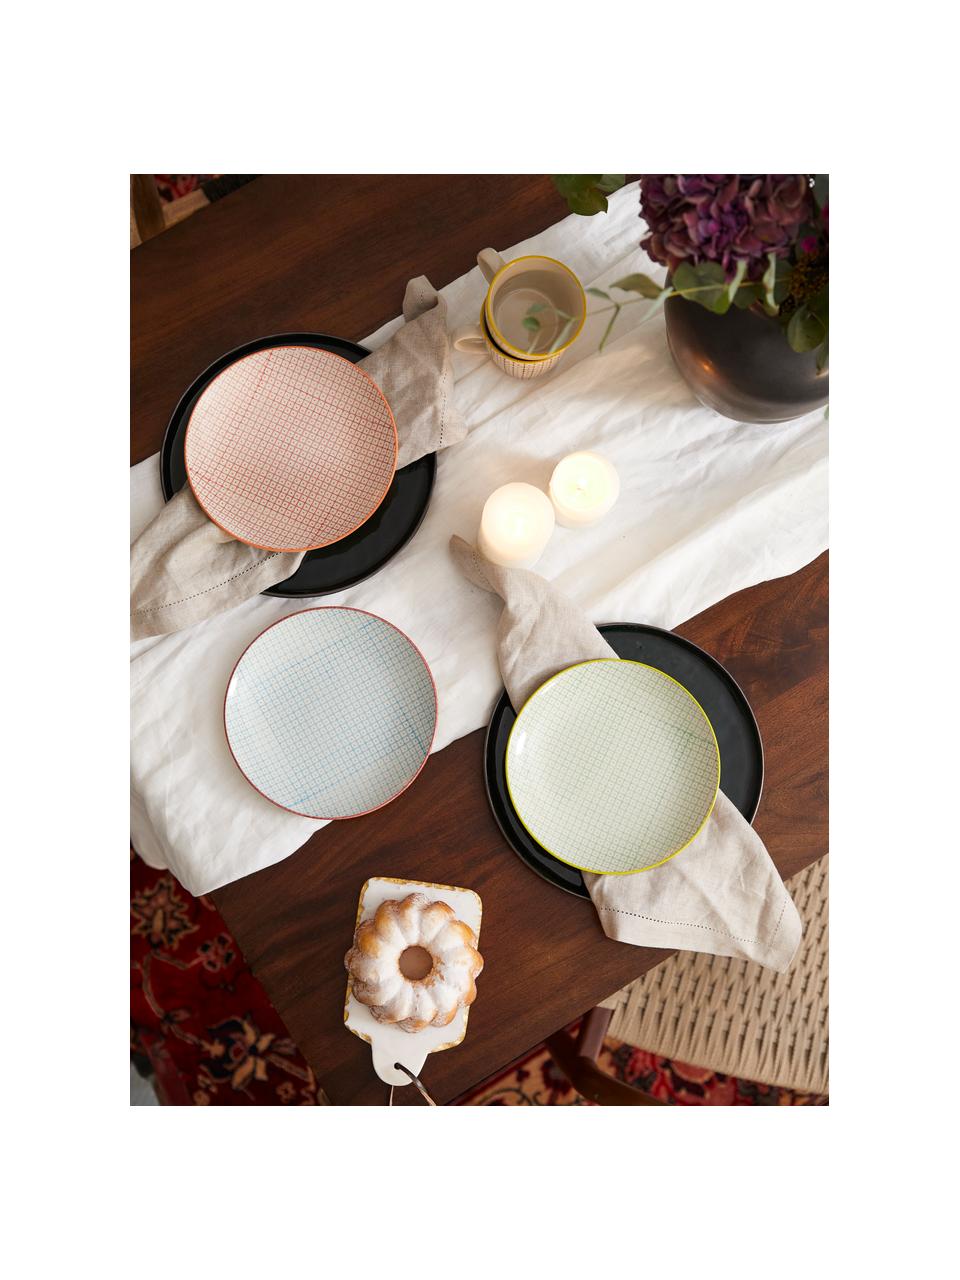 Komplet ręcznie malowanych talerzy śniadaniowych Carla, 3 elem., Ceramika, Czerwony, zielony, niebieski, Ø 20 cm